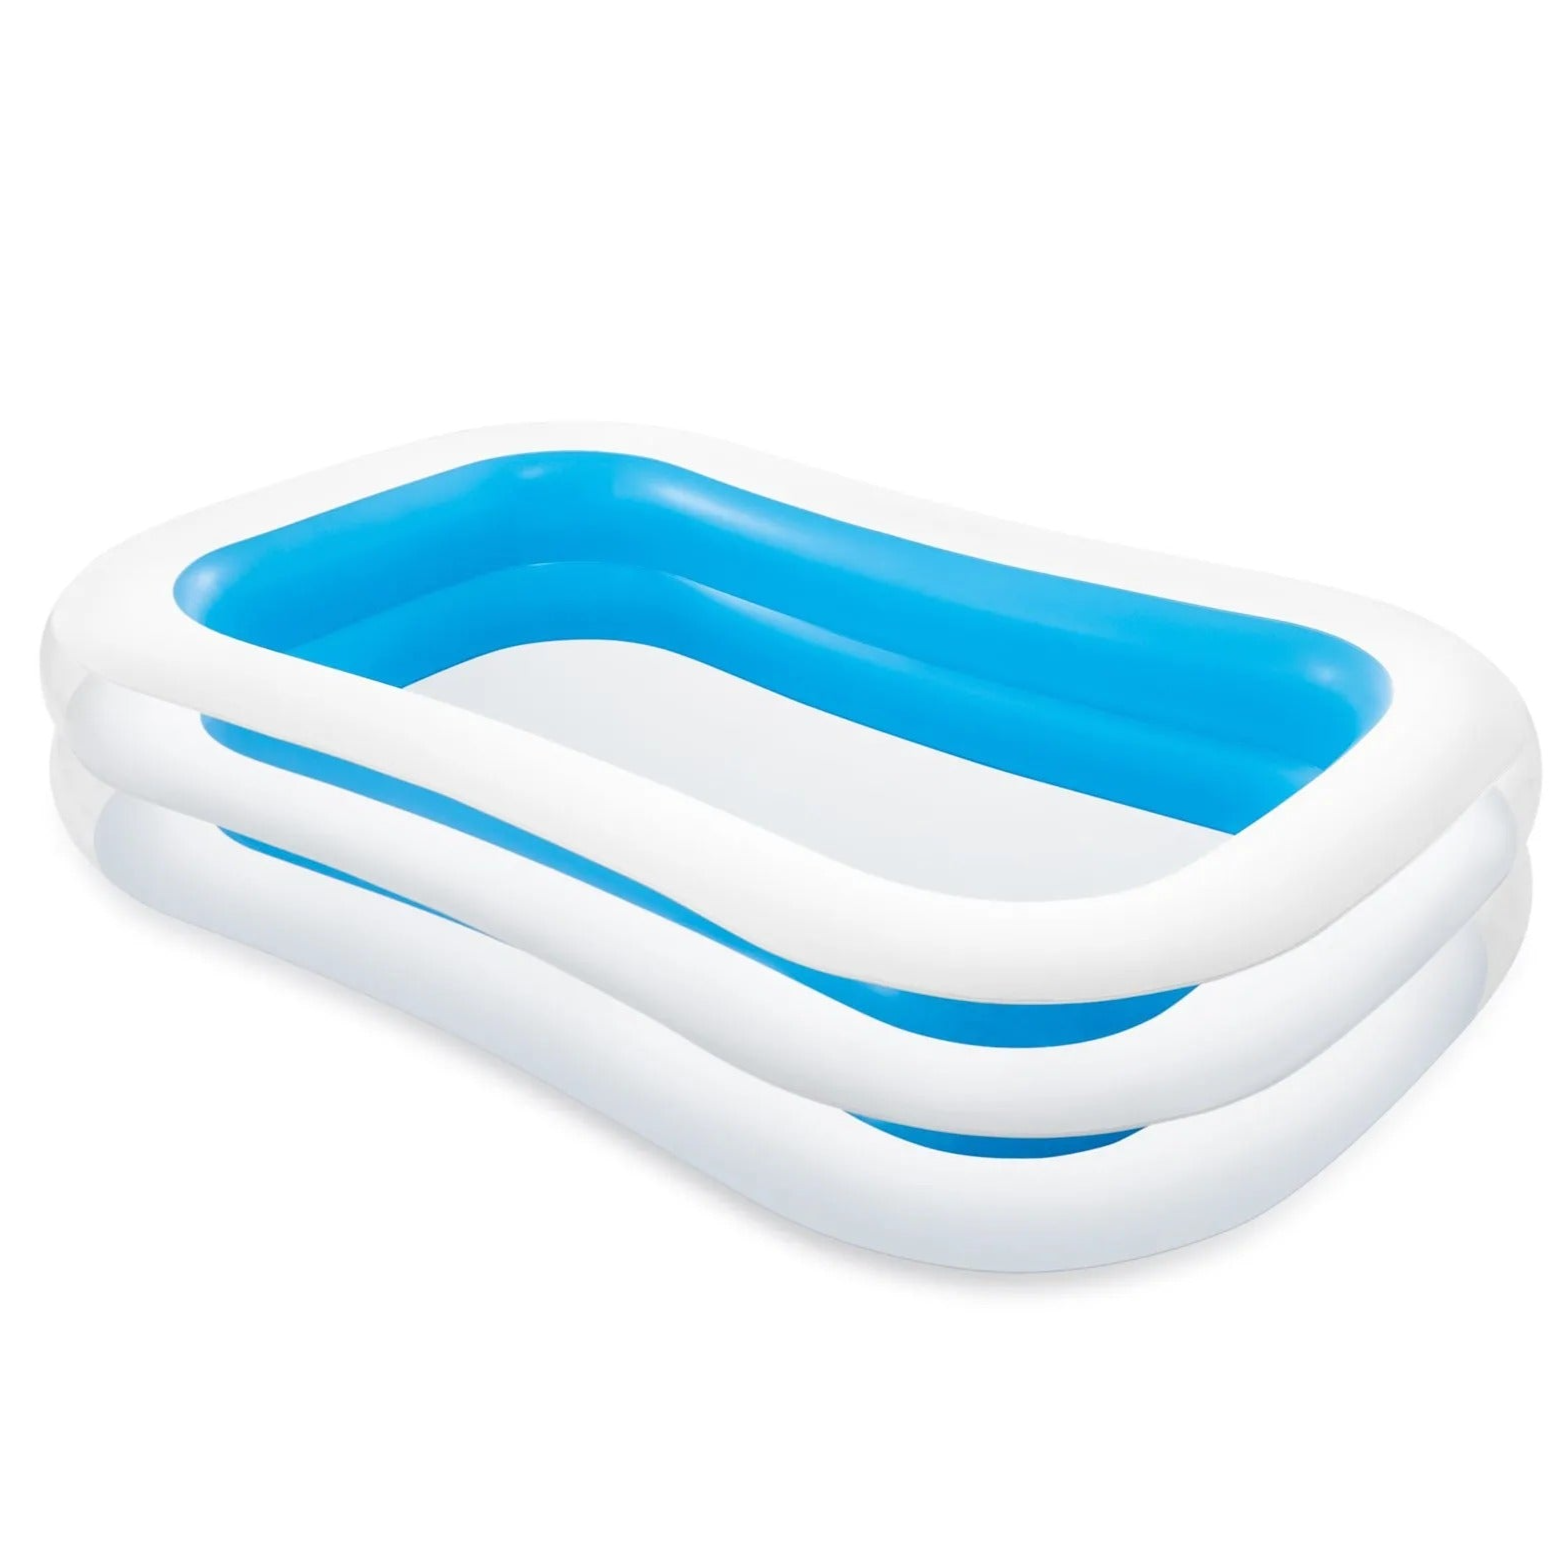 Intex Swimming Tub - White and Blue - (L 261 X B 175 X H 55 cm)